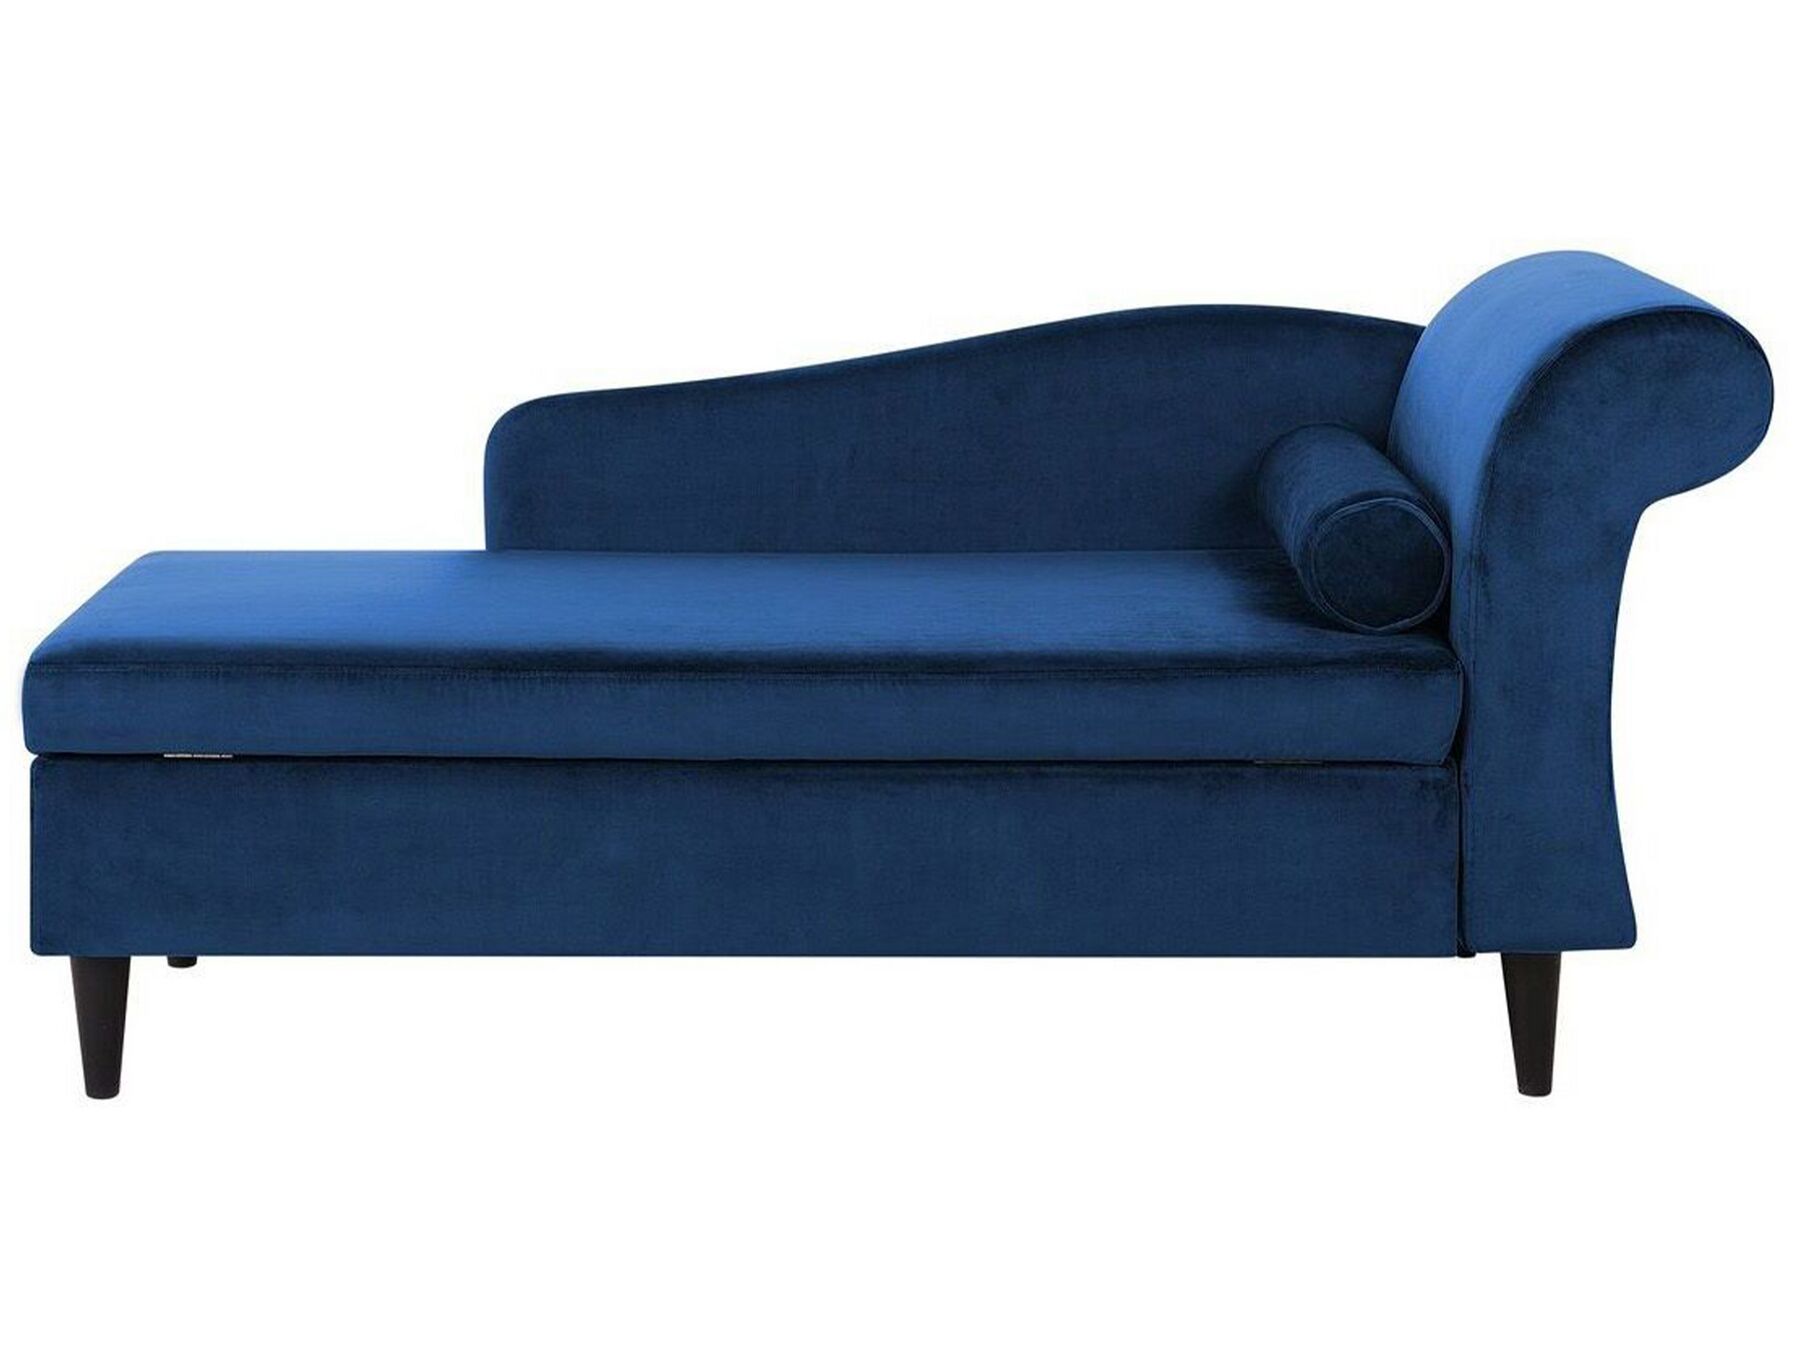 Chaise-longue à direita em veludo azul marinho LUIRO_769584